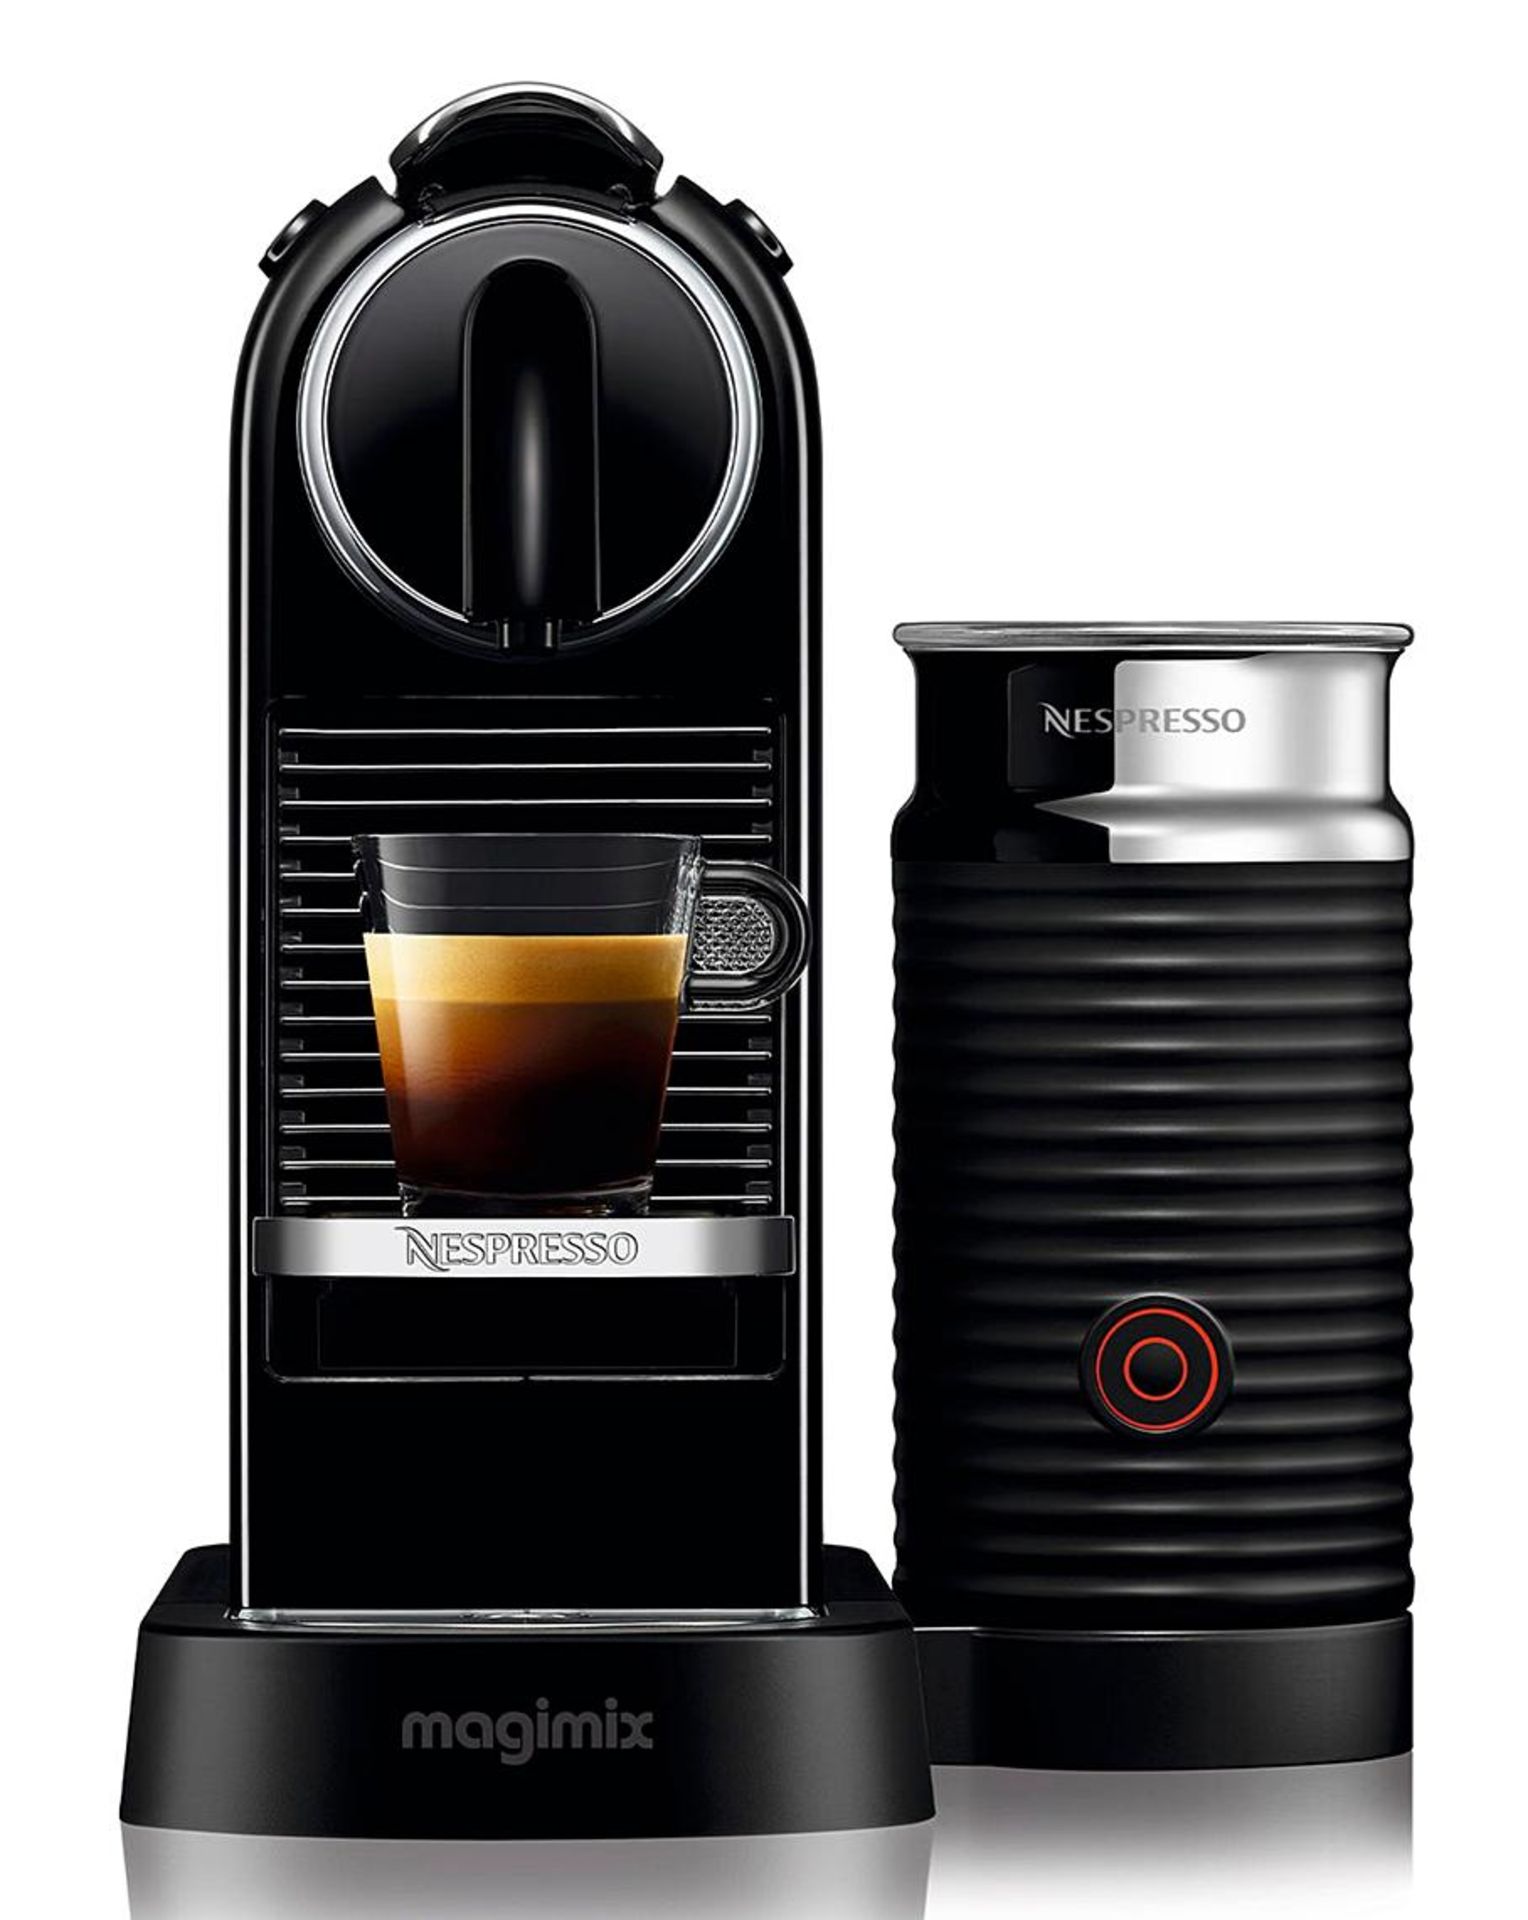 Nespresso 11317 CitiZ Black Capsule Coffee Machine with Aeroccino by Magimix. RRP £225.00. - SR4.